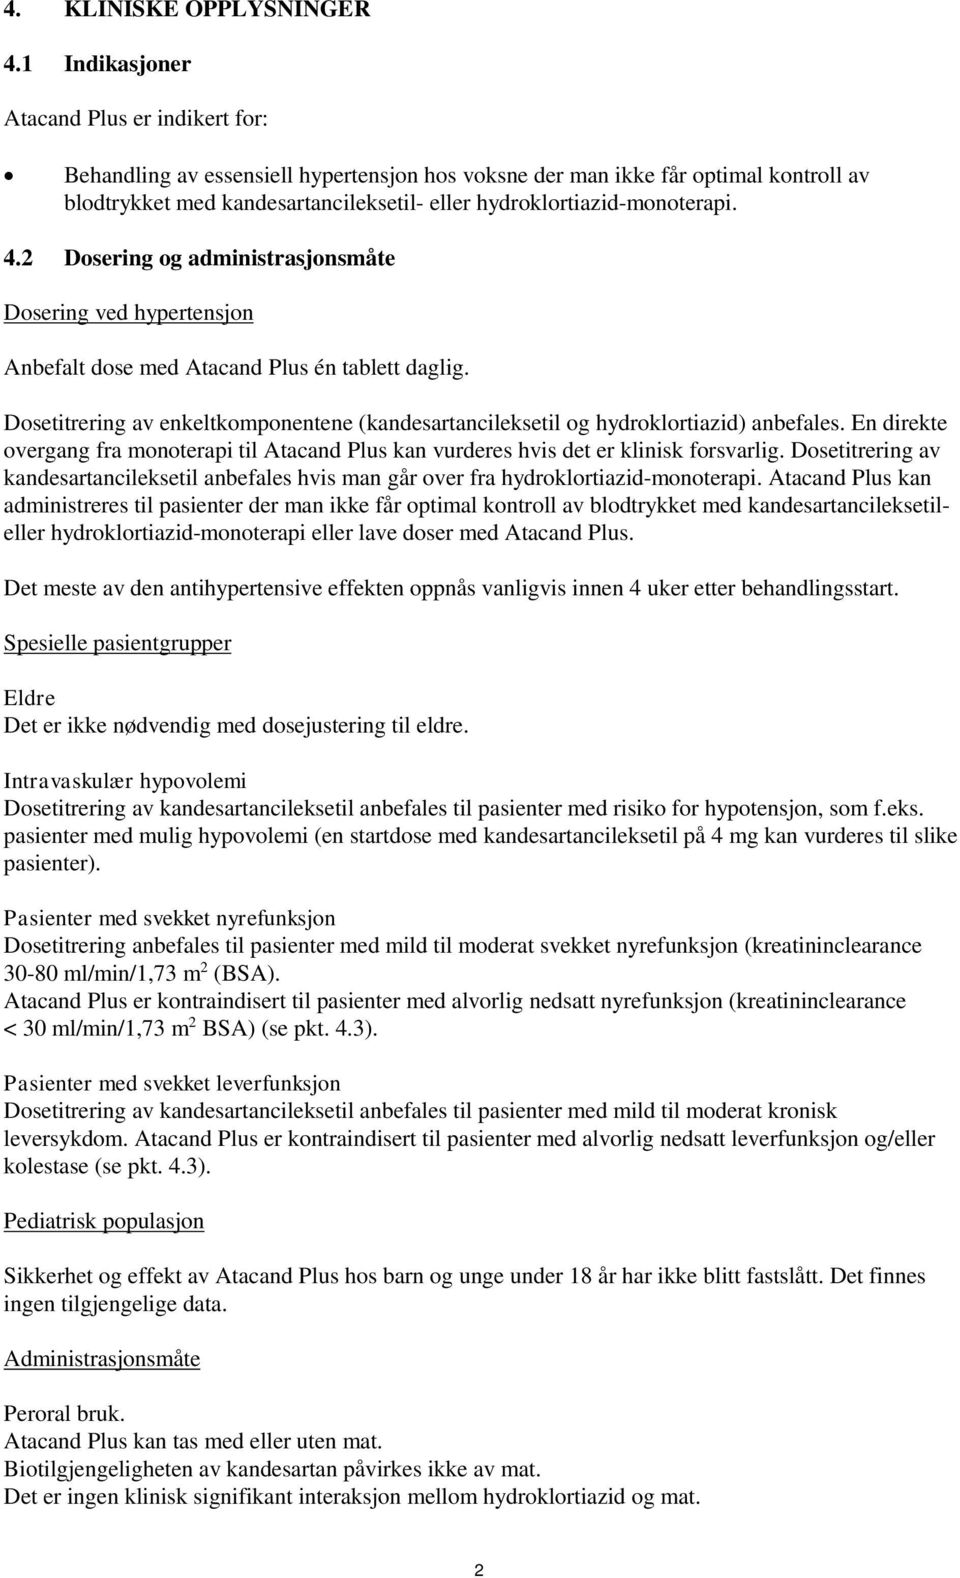 hydroklortiazid-monoterapi. 4.2 Dosering og administrasjonsmåte Dosering ved hypertensjon Anbefalt dose med Atacand Plus én tablett daglig.